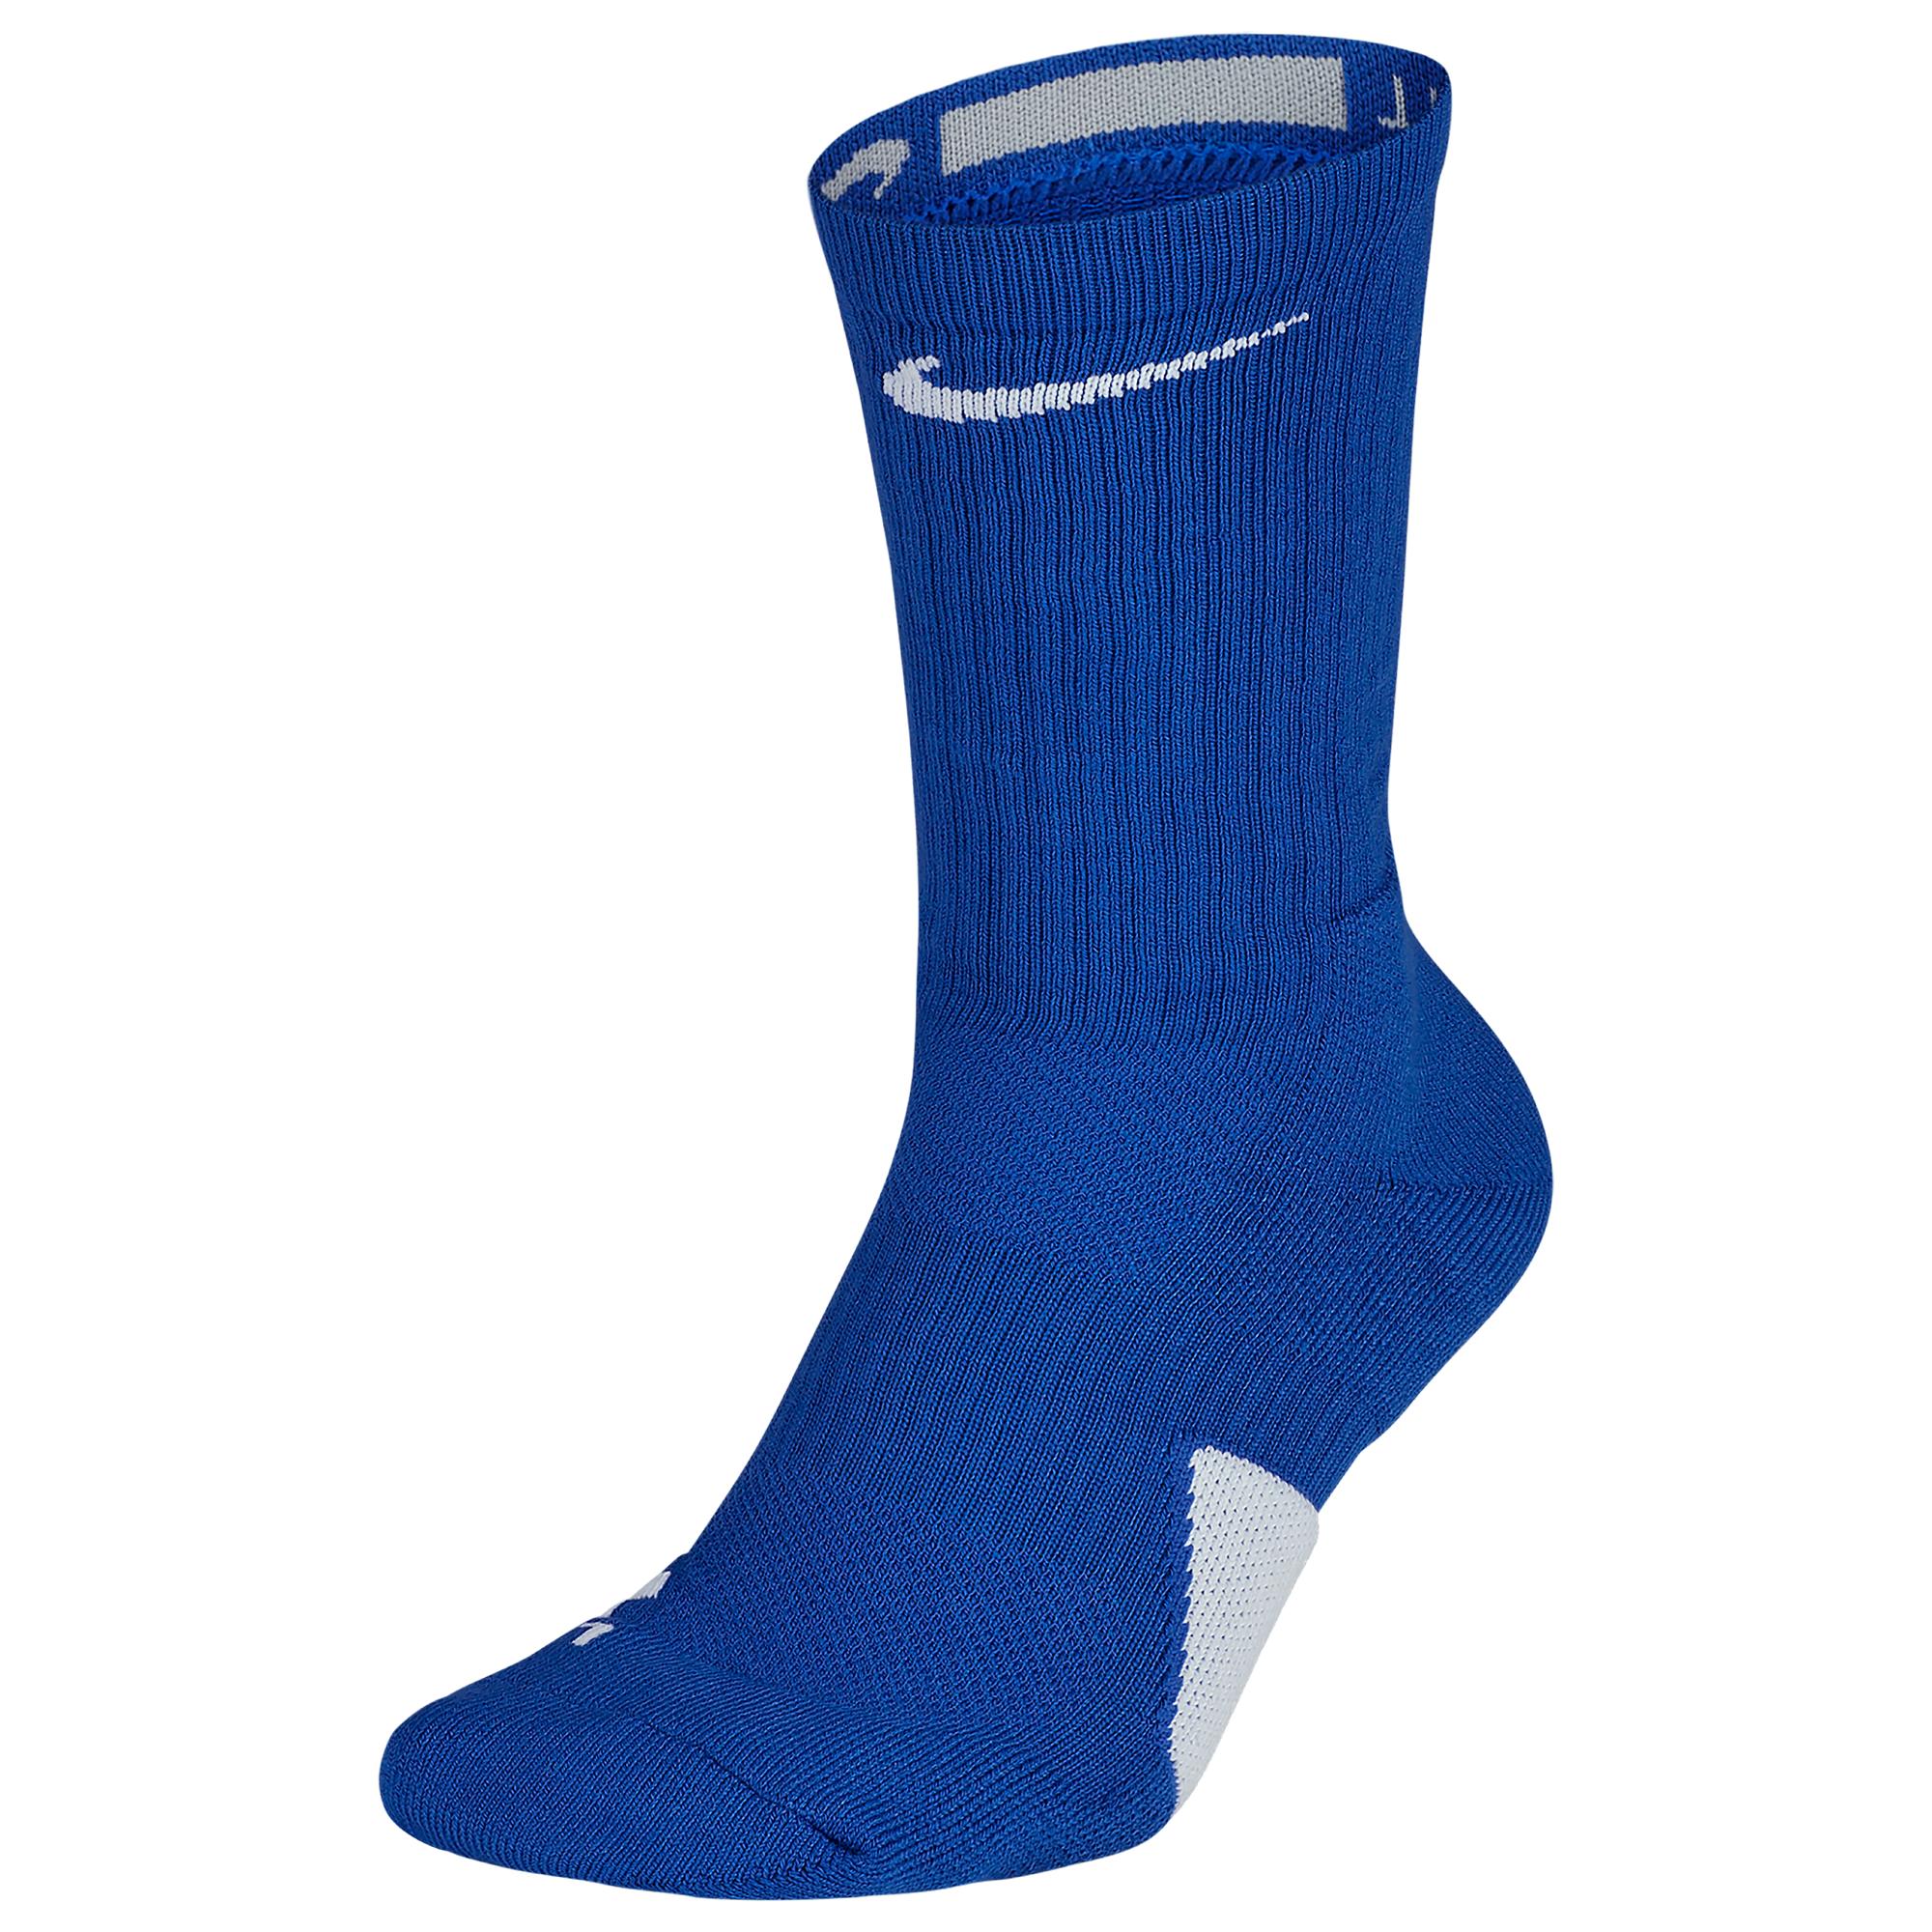 Nike Elite Crew Socks in Blue for Men - Lyst